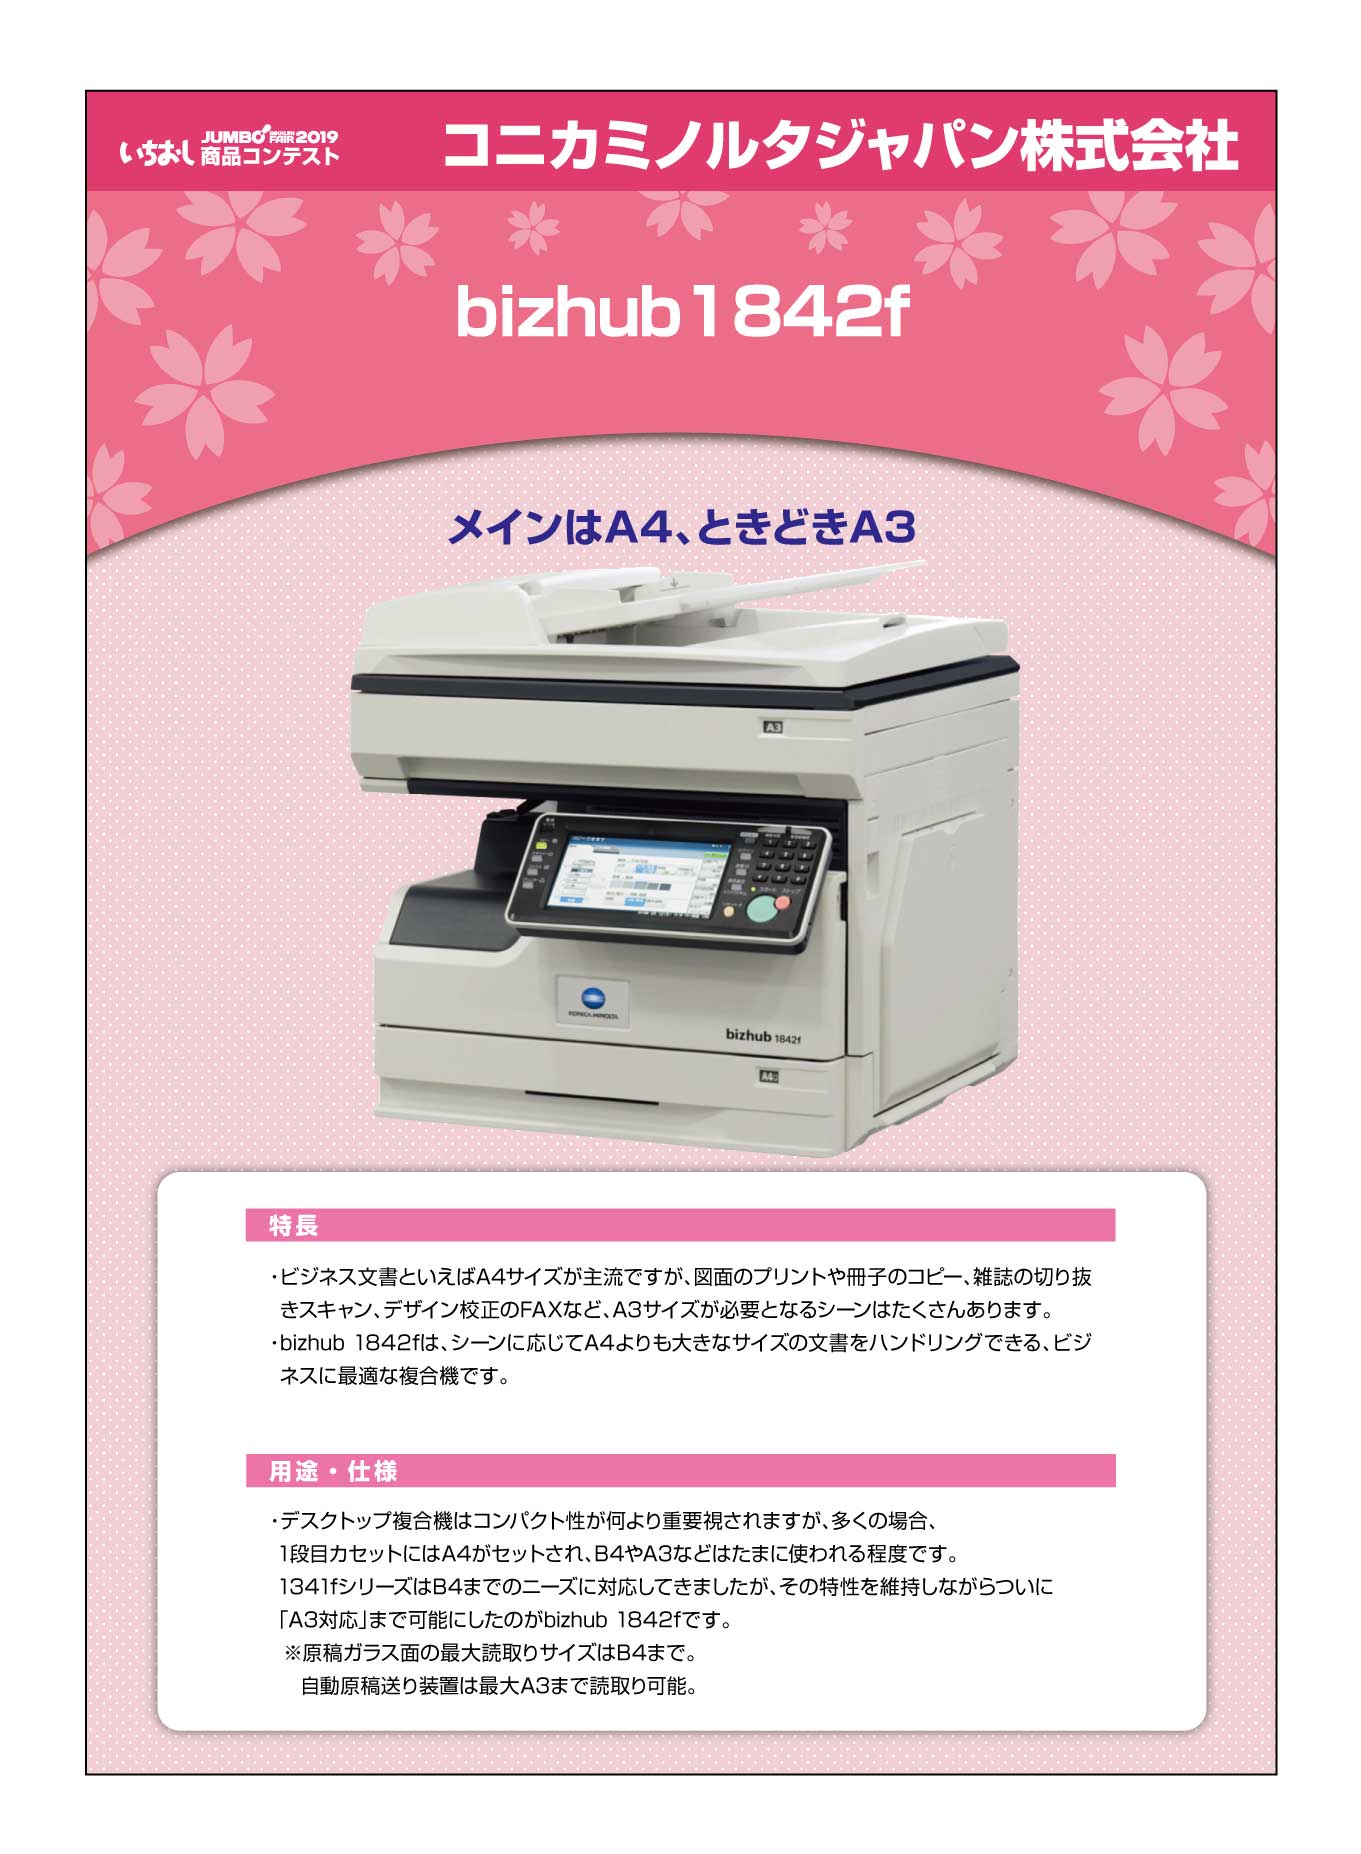 「bizhub1842f」コニカミノルタジャパン株式会社の画像